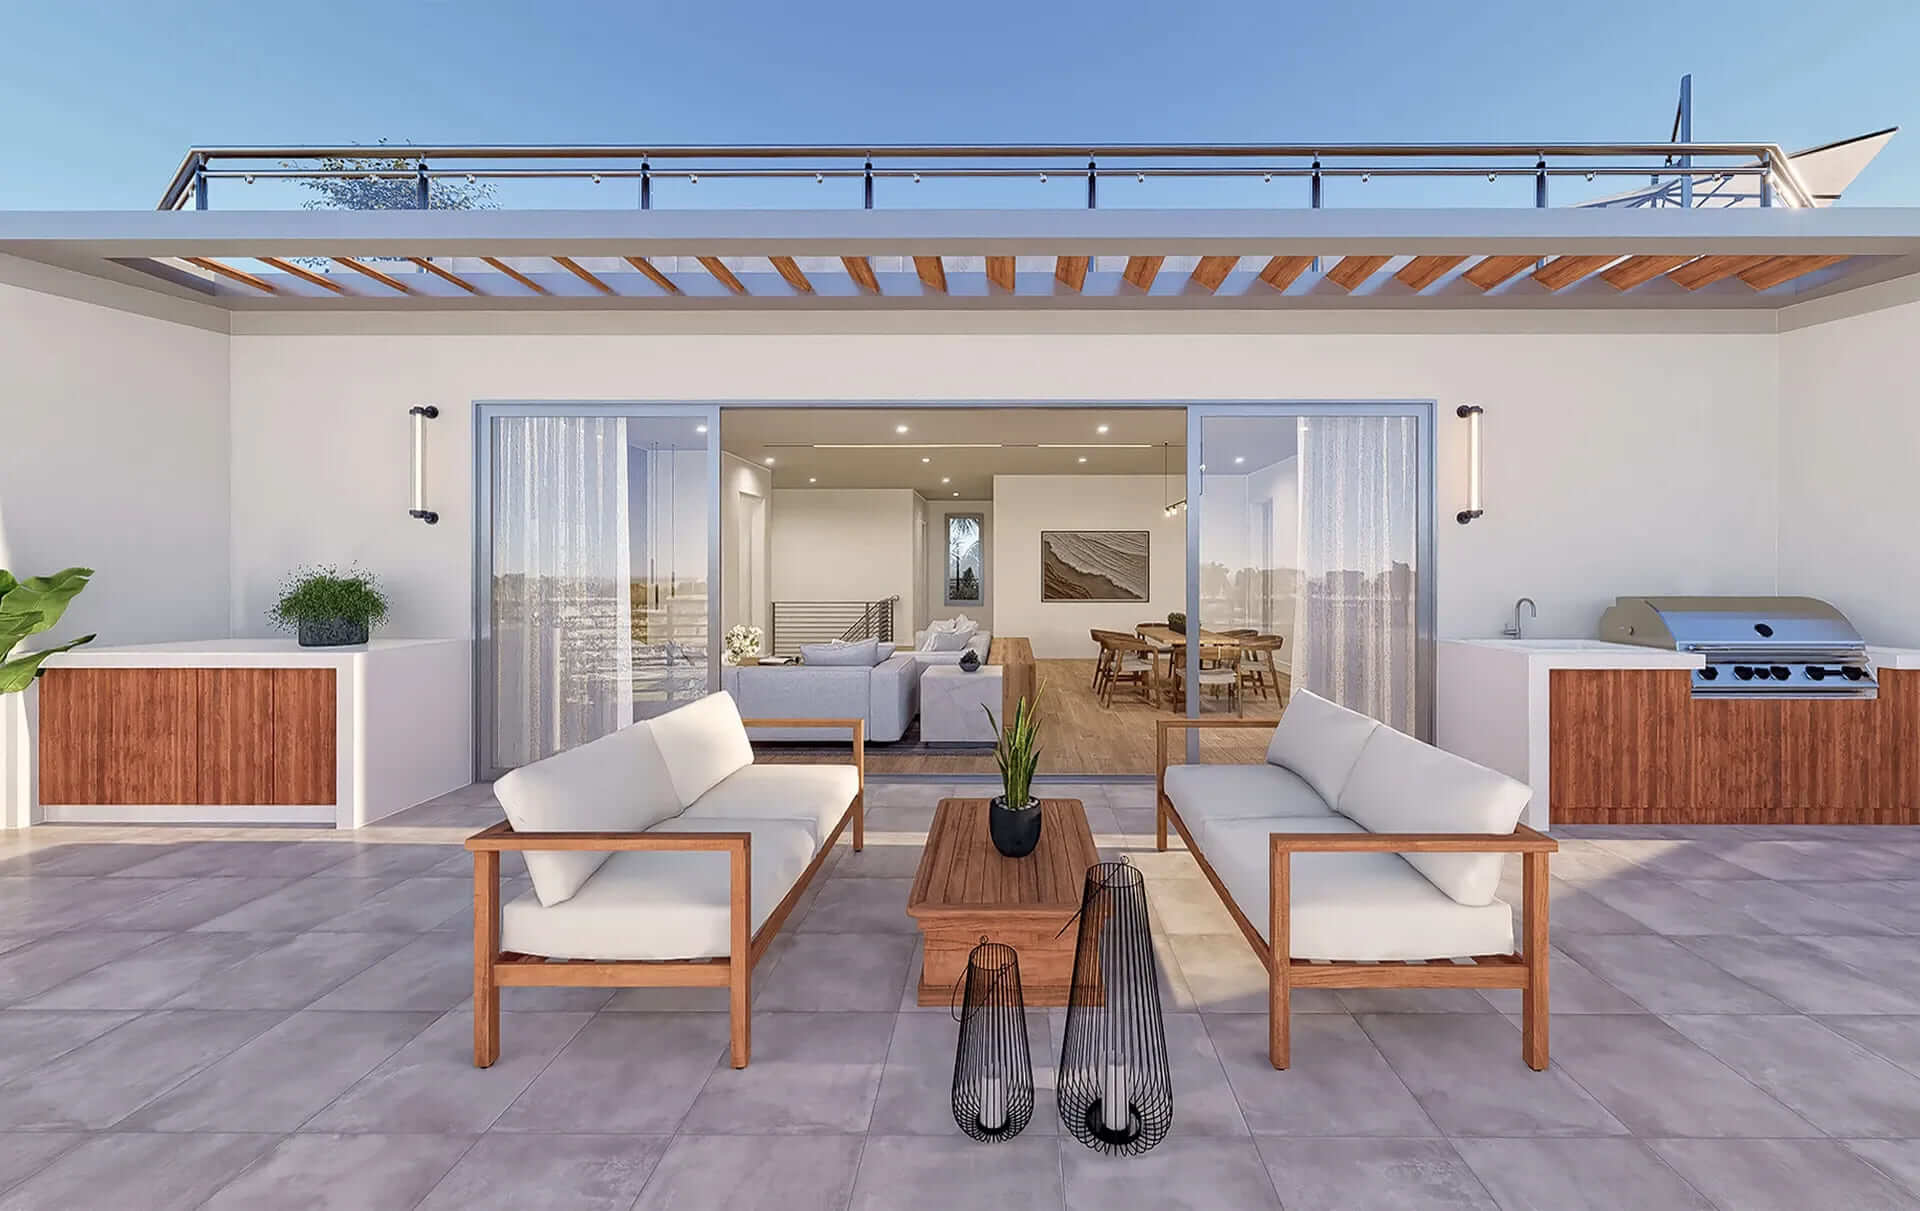 Siesta Key Azure Florida unit 400 - outdoor terrace